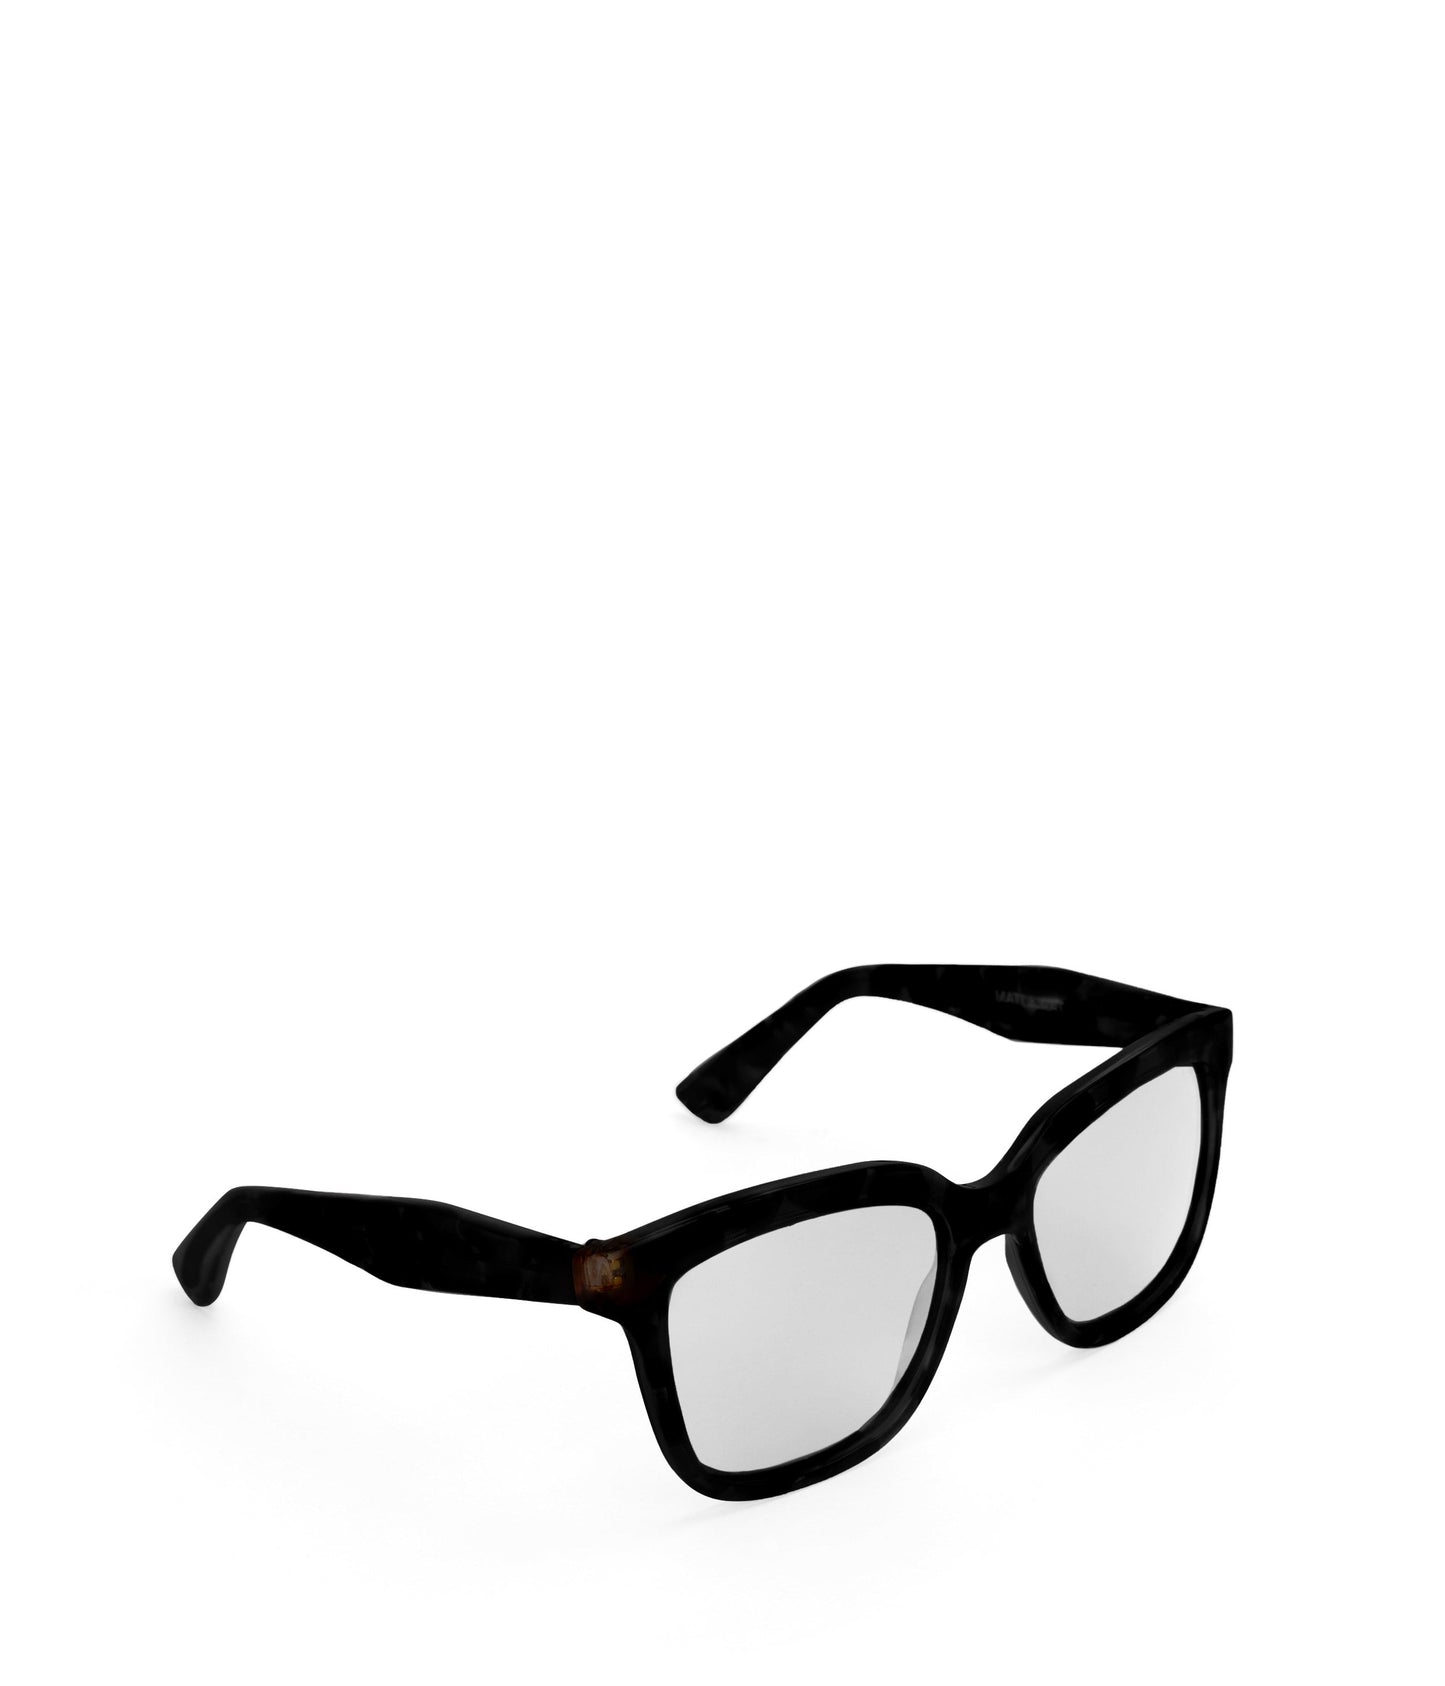 VIVIE Wayfarer Sunglasses | Color: Black - variant::blkblk